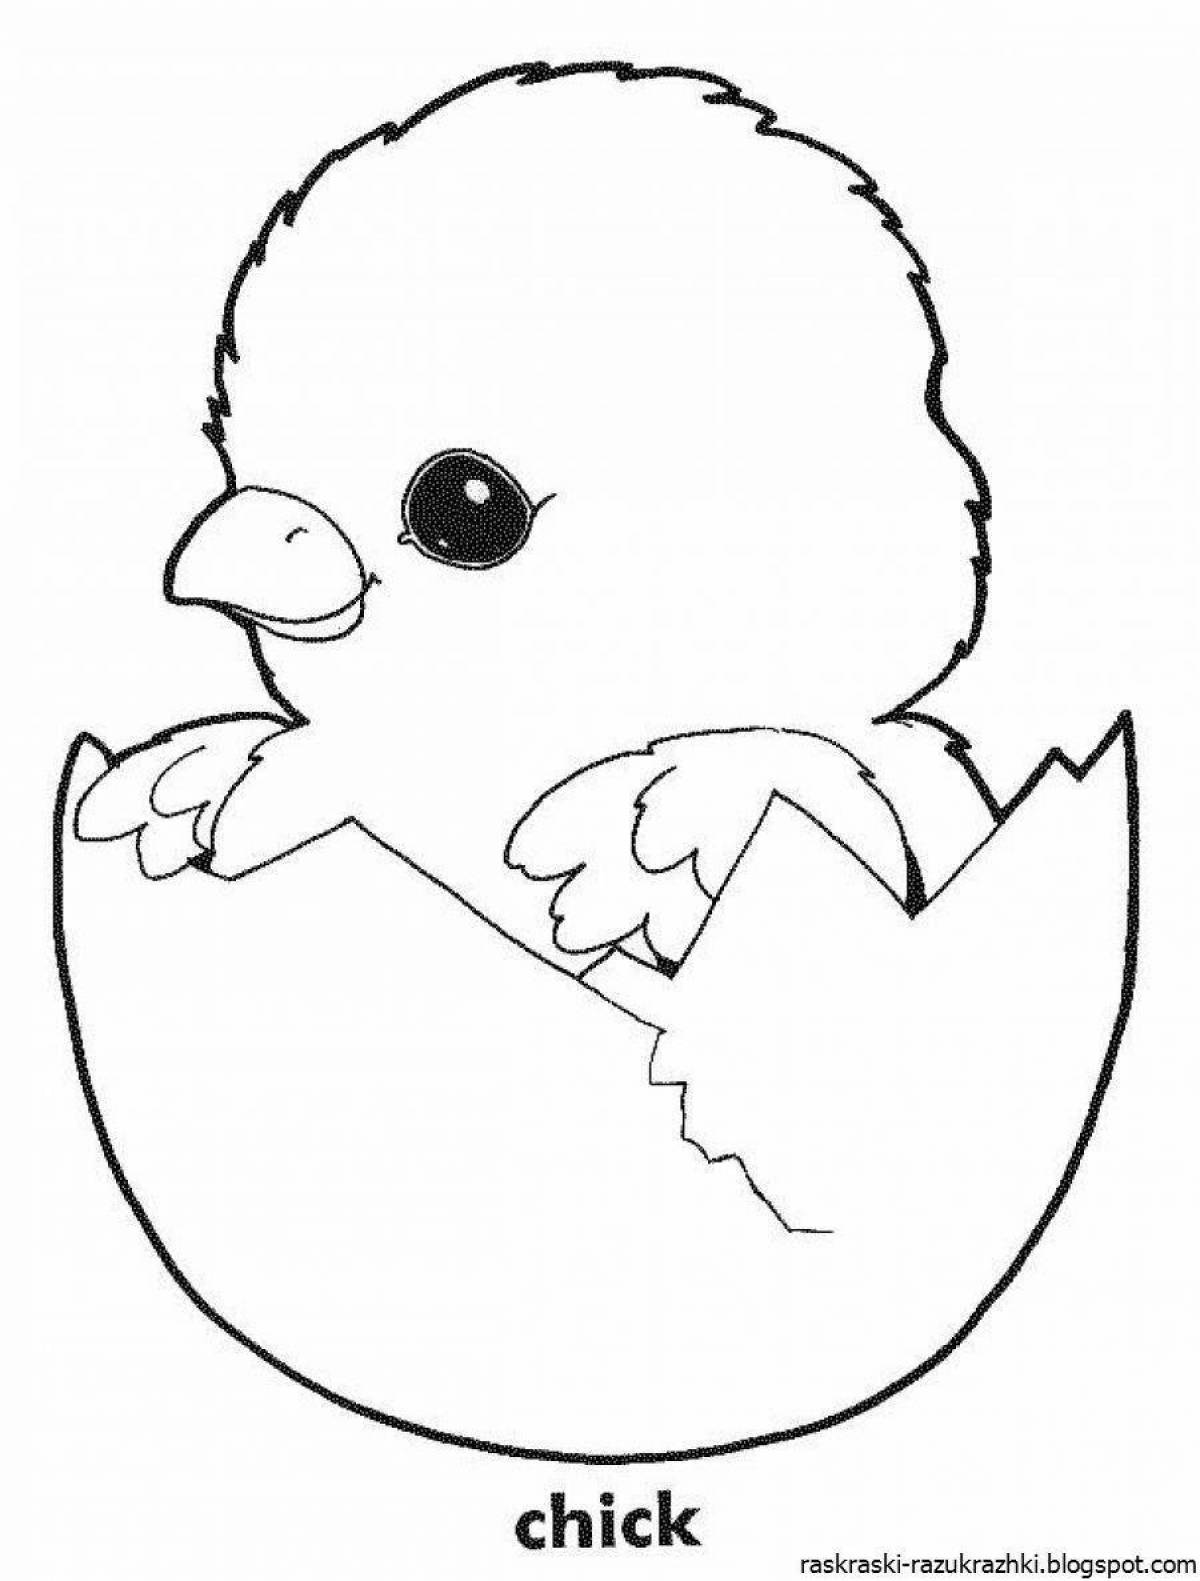 Нежный рисунок цыпленка